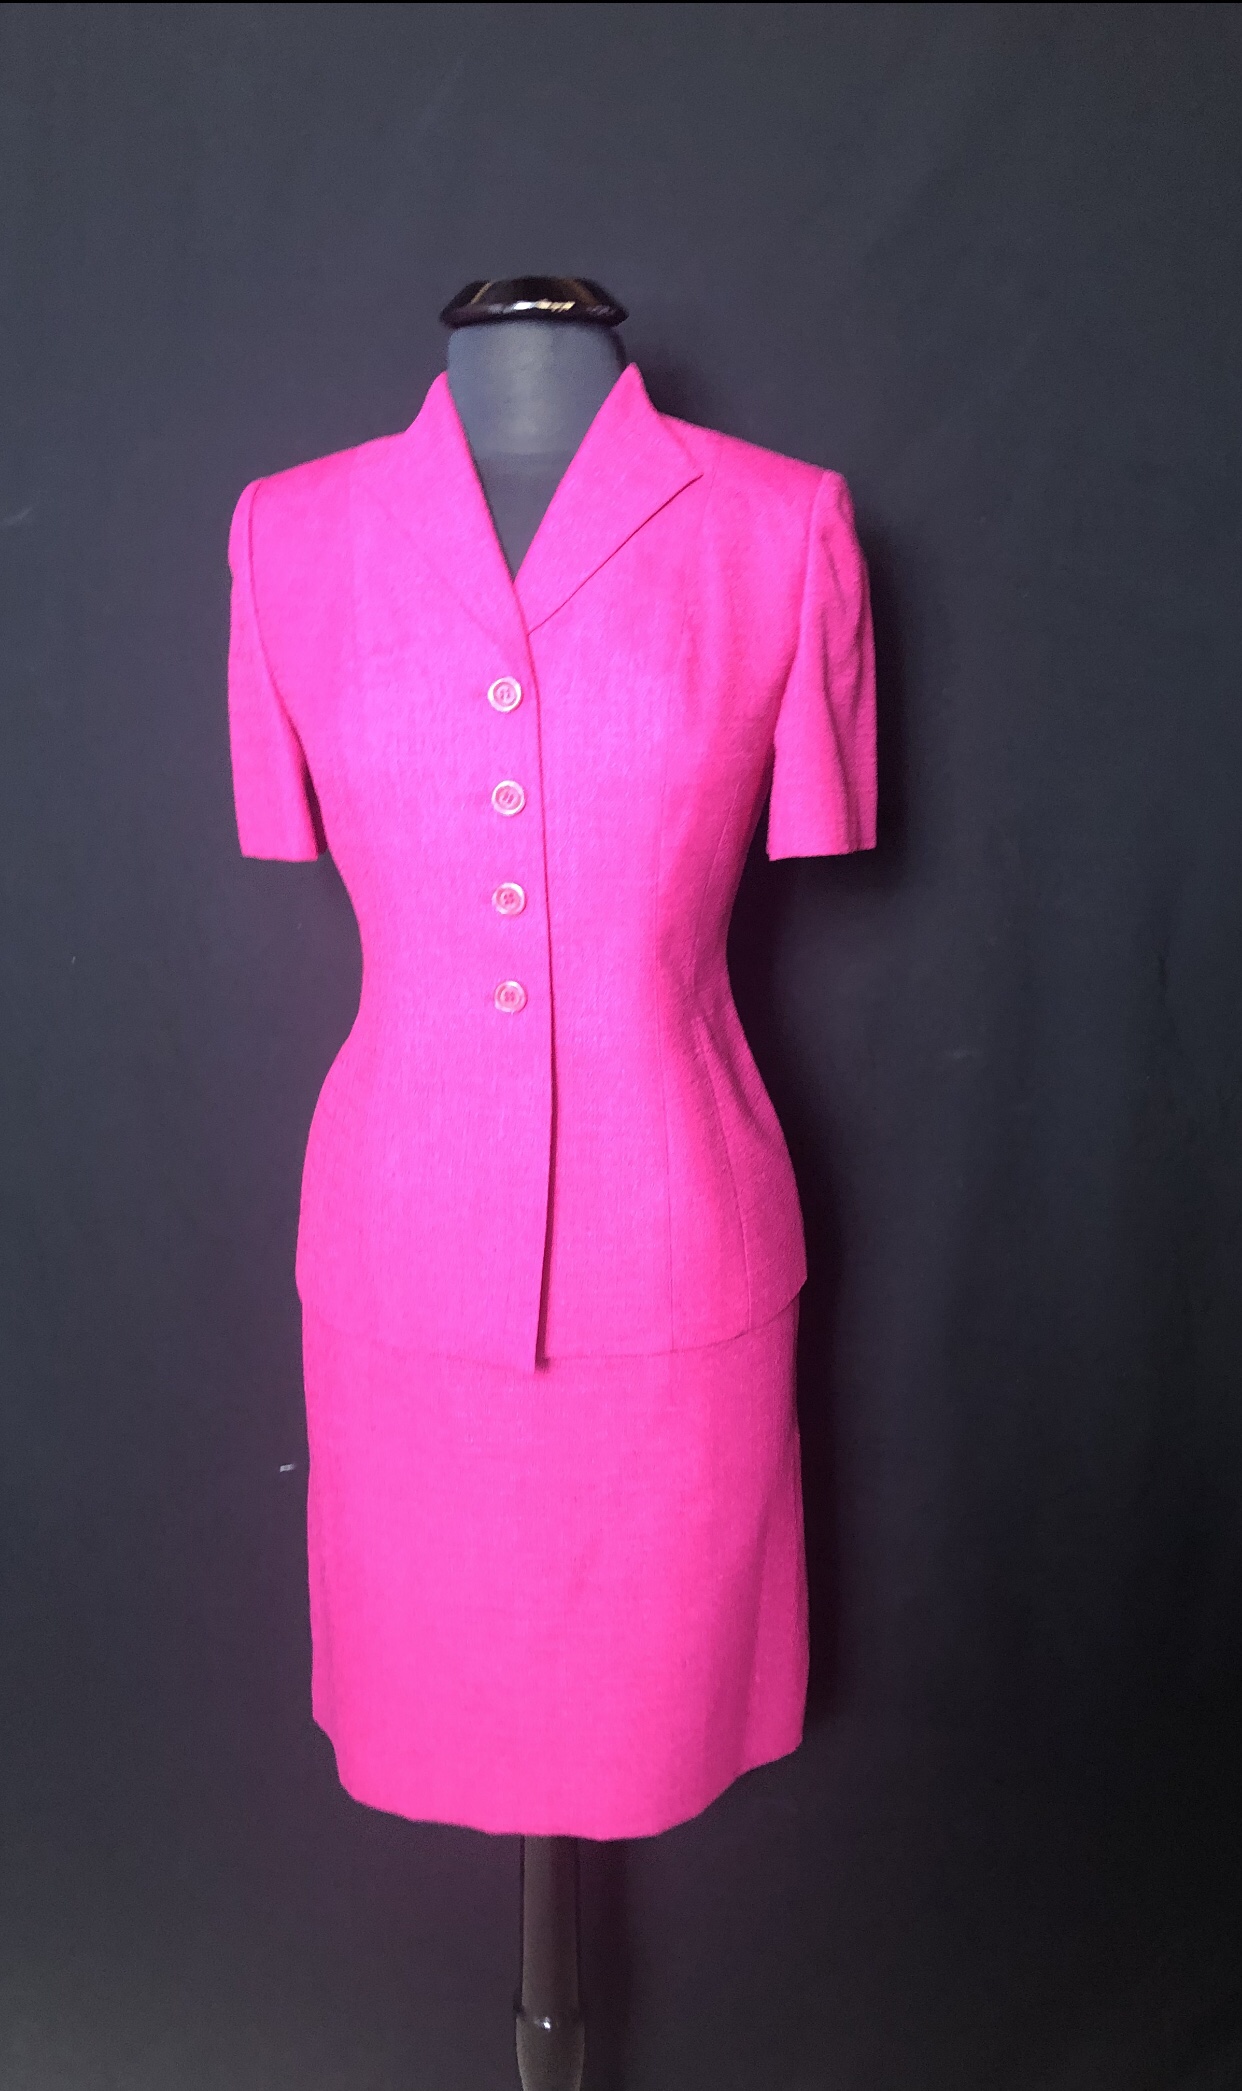 pink Le suit/ skirt suit – Show Dog Handlers Suits